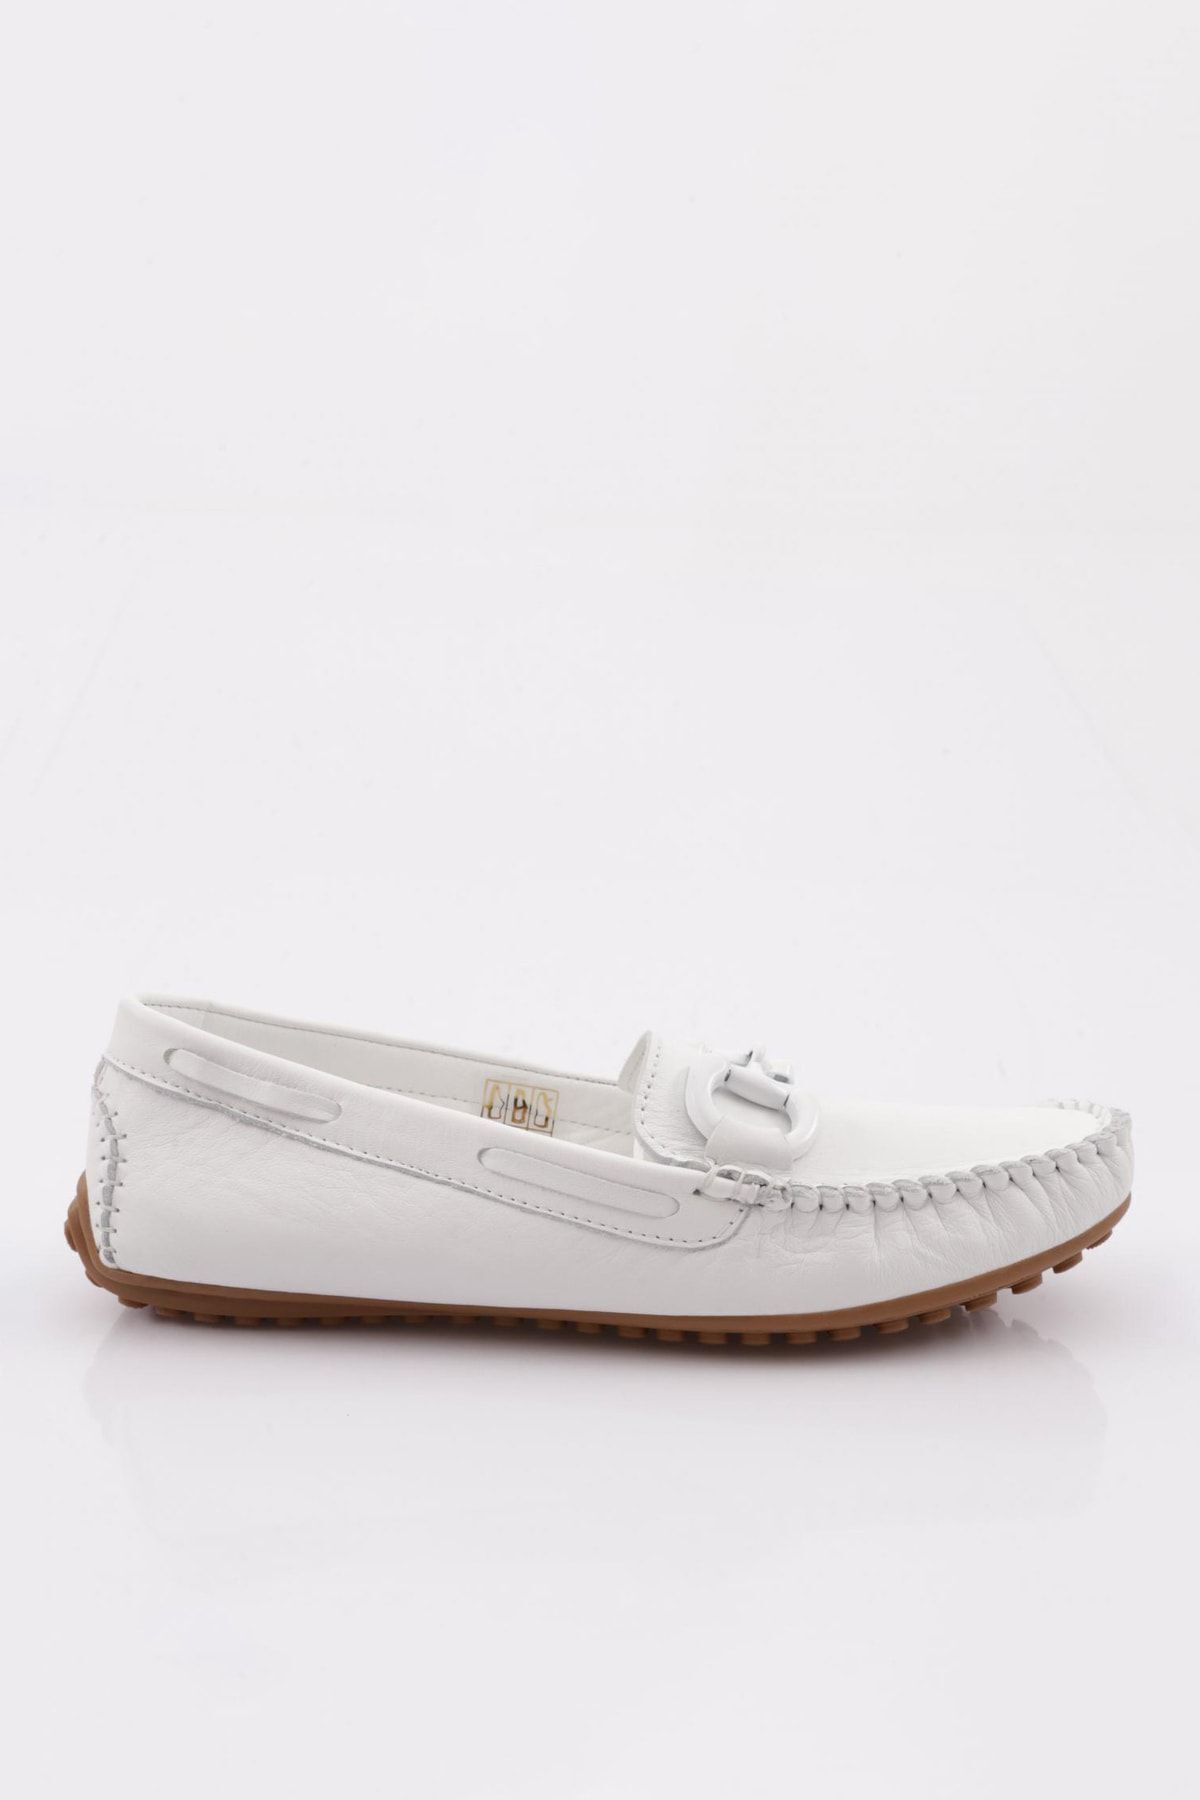 Dgn K105 Kadın Aksesuarlı Loafer Ayakkabı Beyaz Hakiki Deri